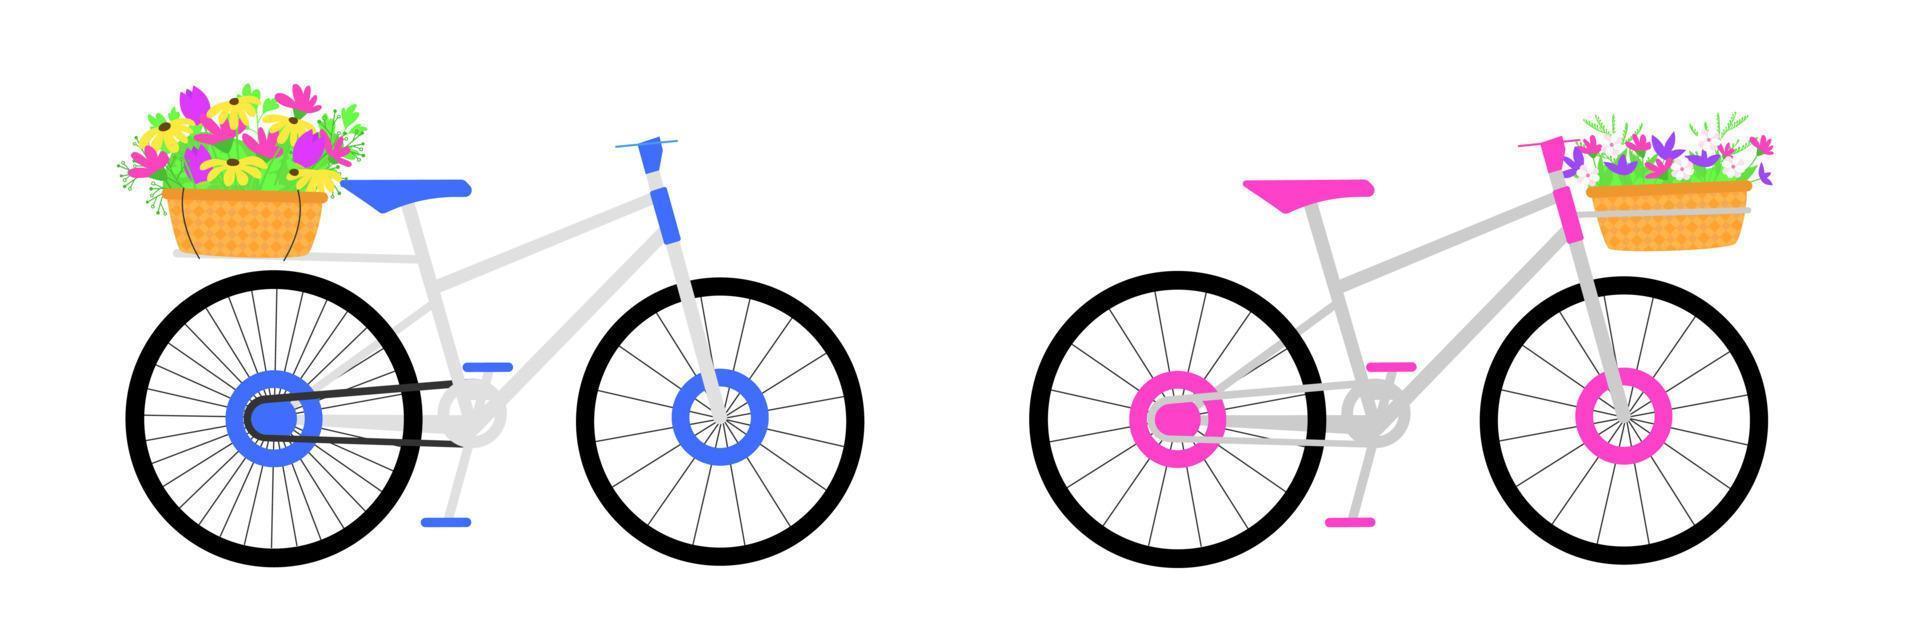 deux vélo avec paniers de fleurs. vecteur illustration.